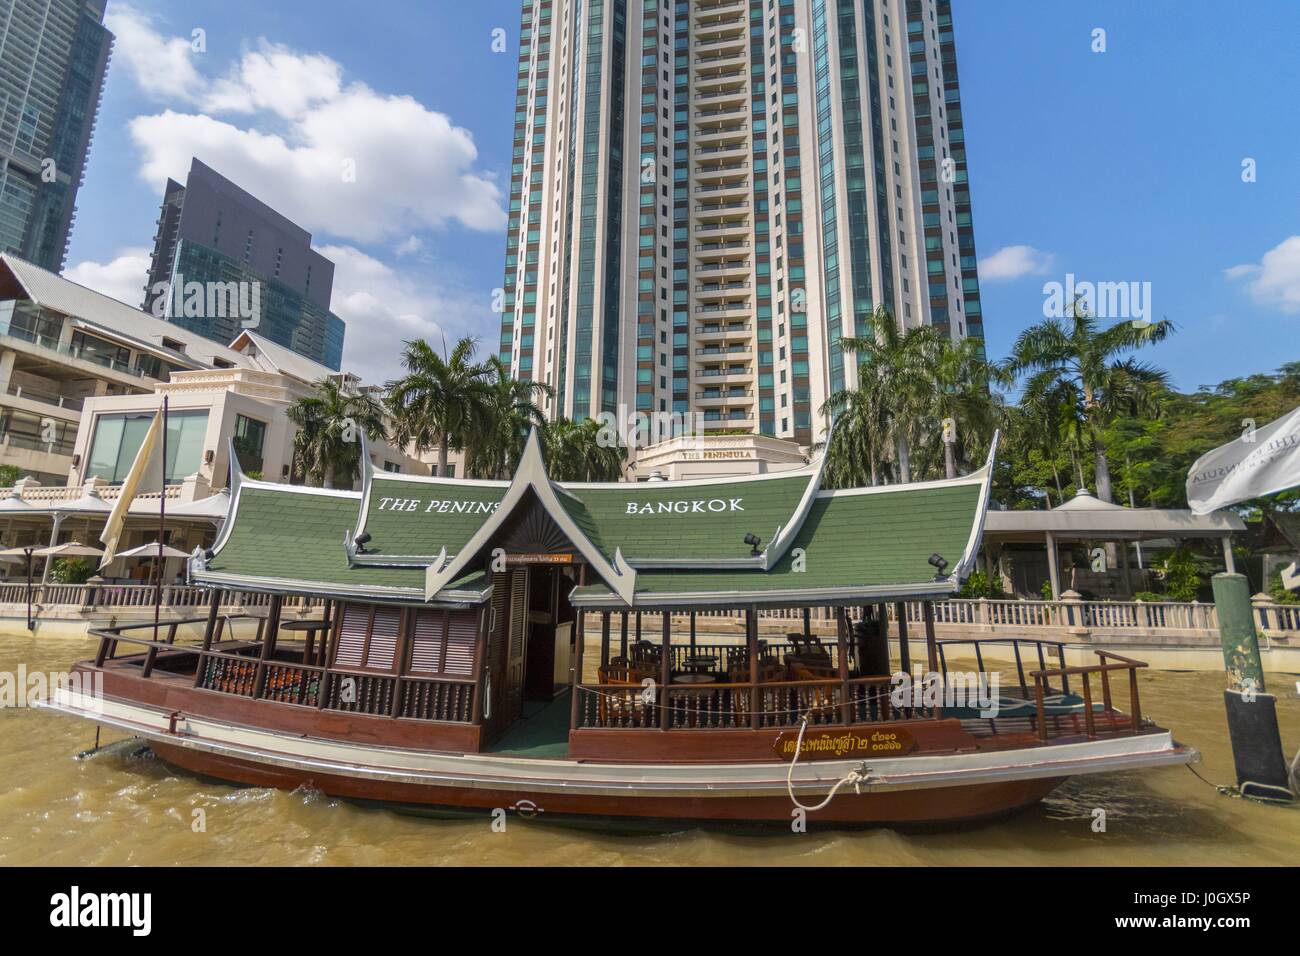 La péninsule est un hôtel de luxe situé sur la rive de la rivière Chao Phraya dans le quartier de Khlong San de Bangkok. Thaïlande Banque D'Images